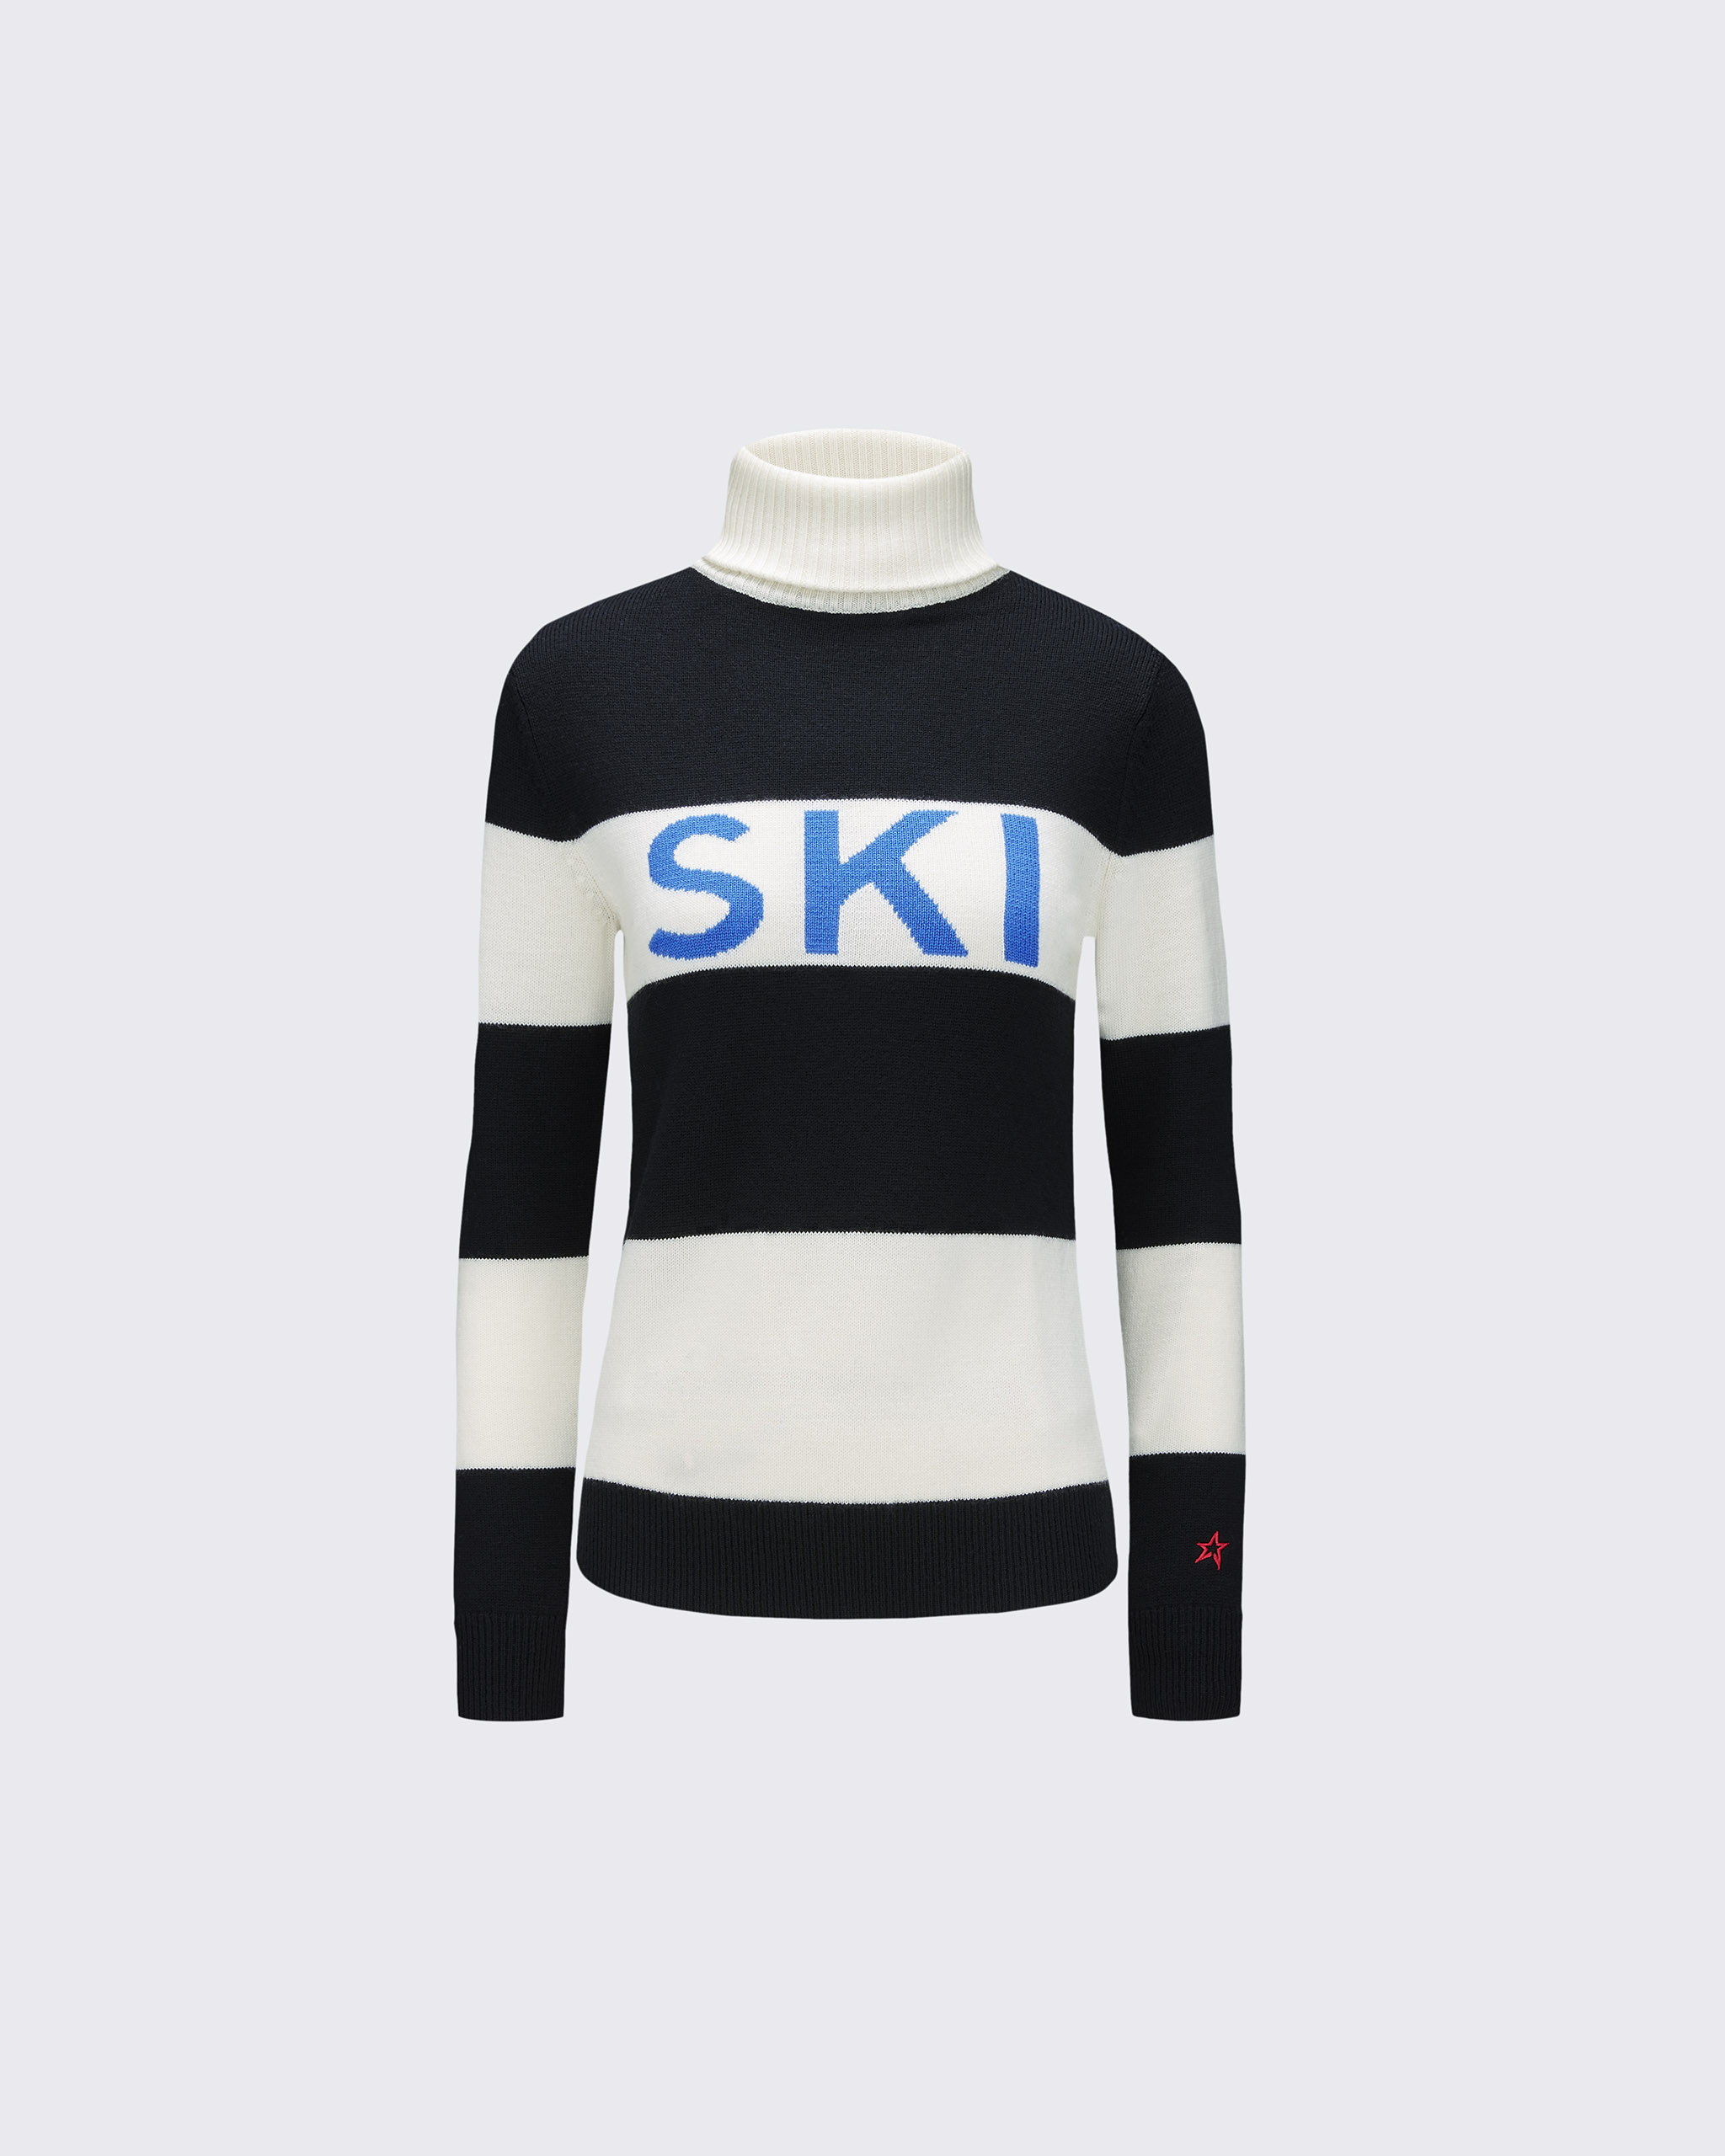 Perfect Moment Ski Sweater Ii Xl In Black-white-stripe